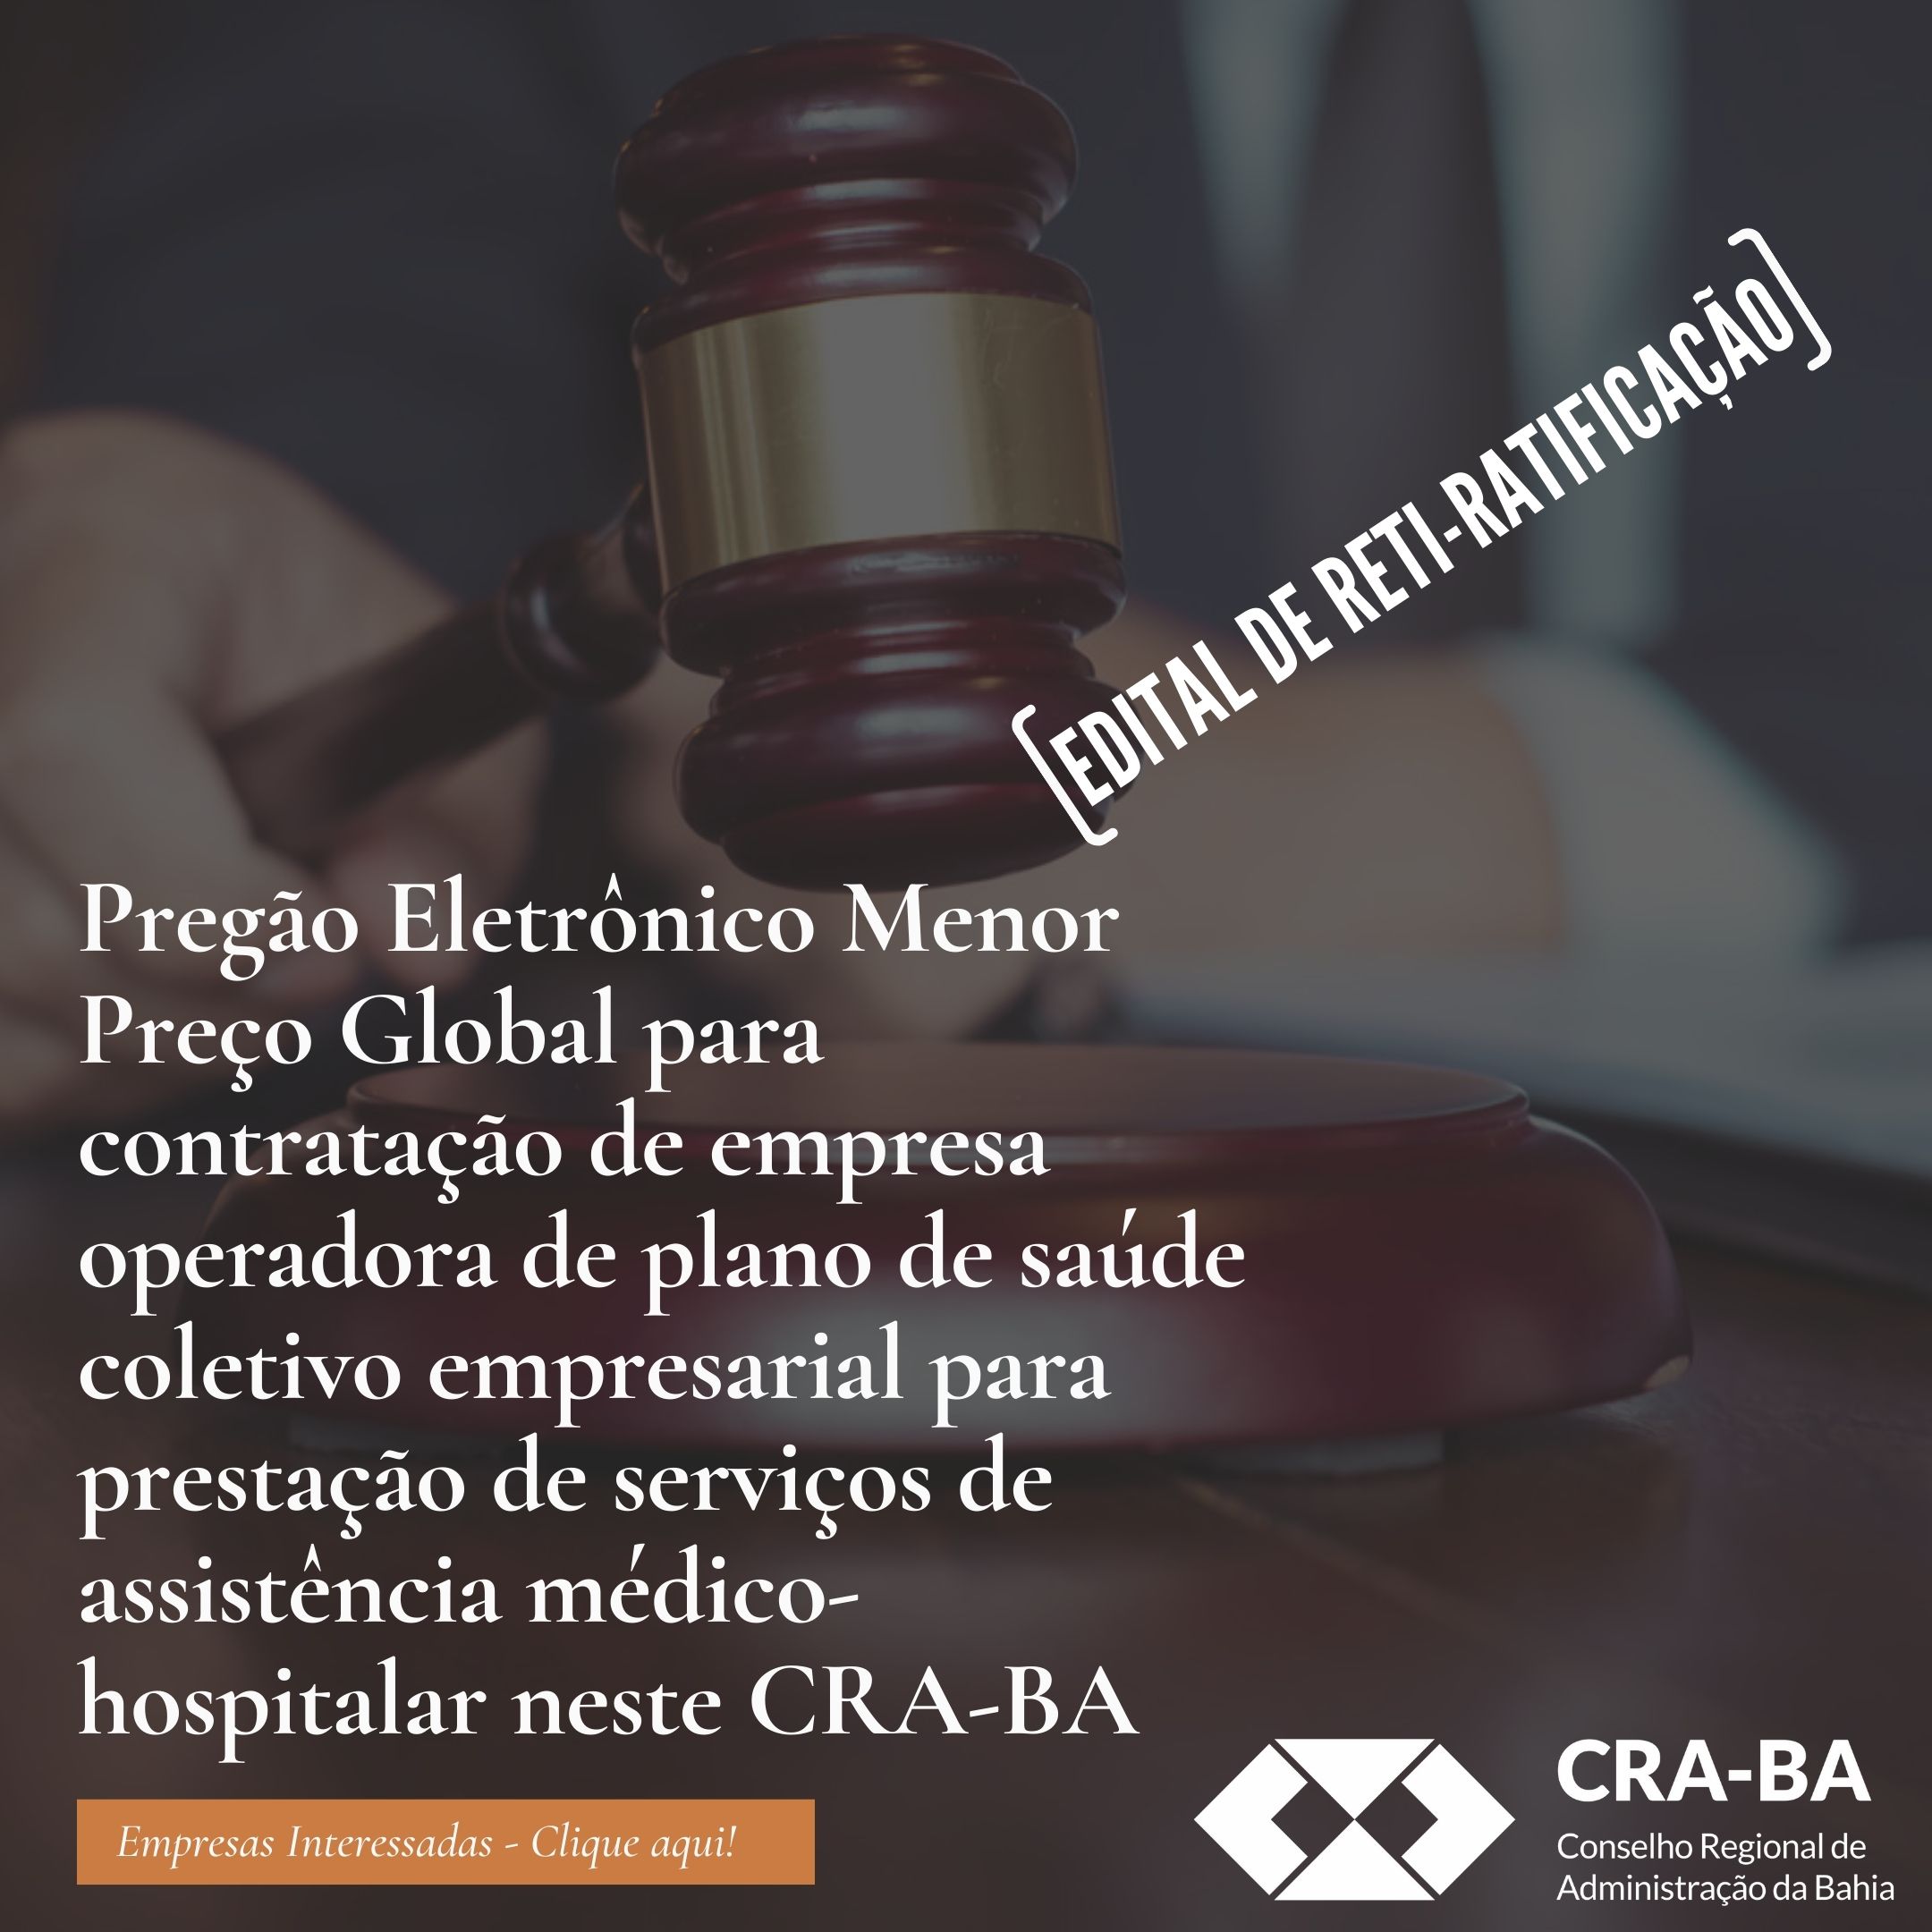 No momento você está vendo Pregão Eletrônico CRA-BA 03/2022 – Contratação de Plano de Saúde Coletivo – Reti-Ratificação Nº1